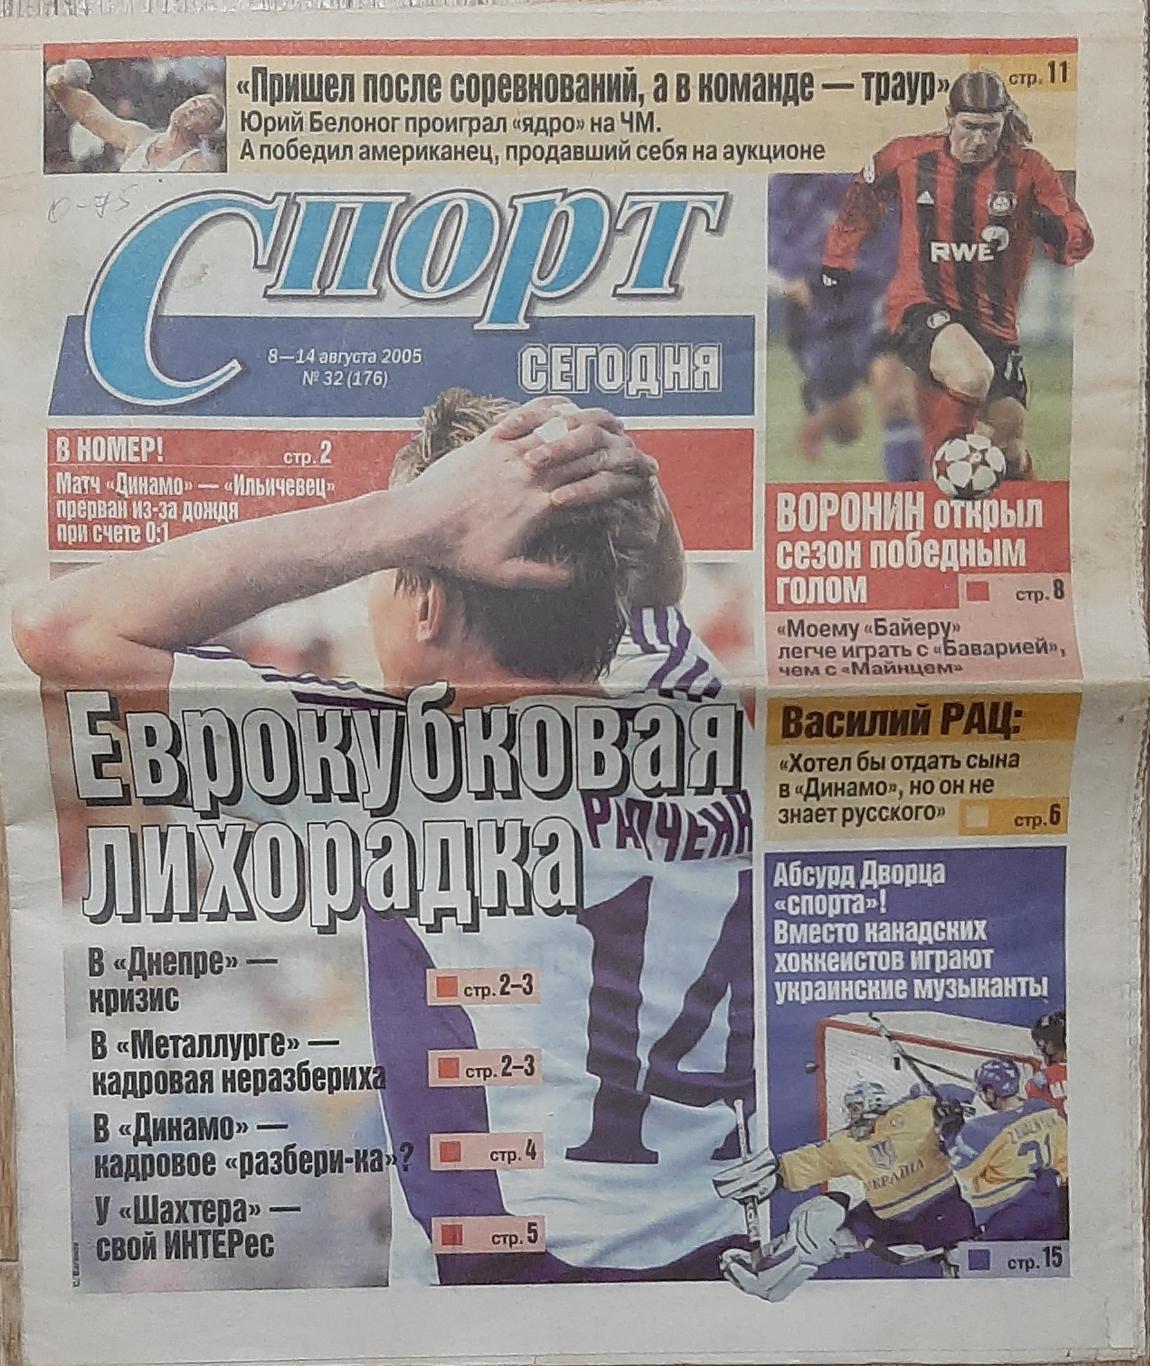 Спорт сегодня #32 (8-14.08.2005) Тун - Динамо Київ